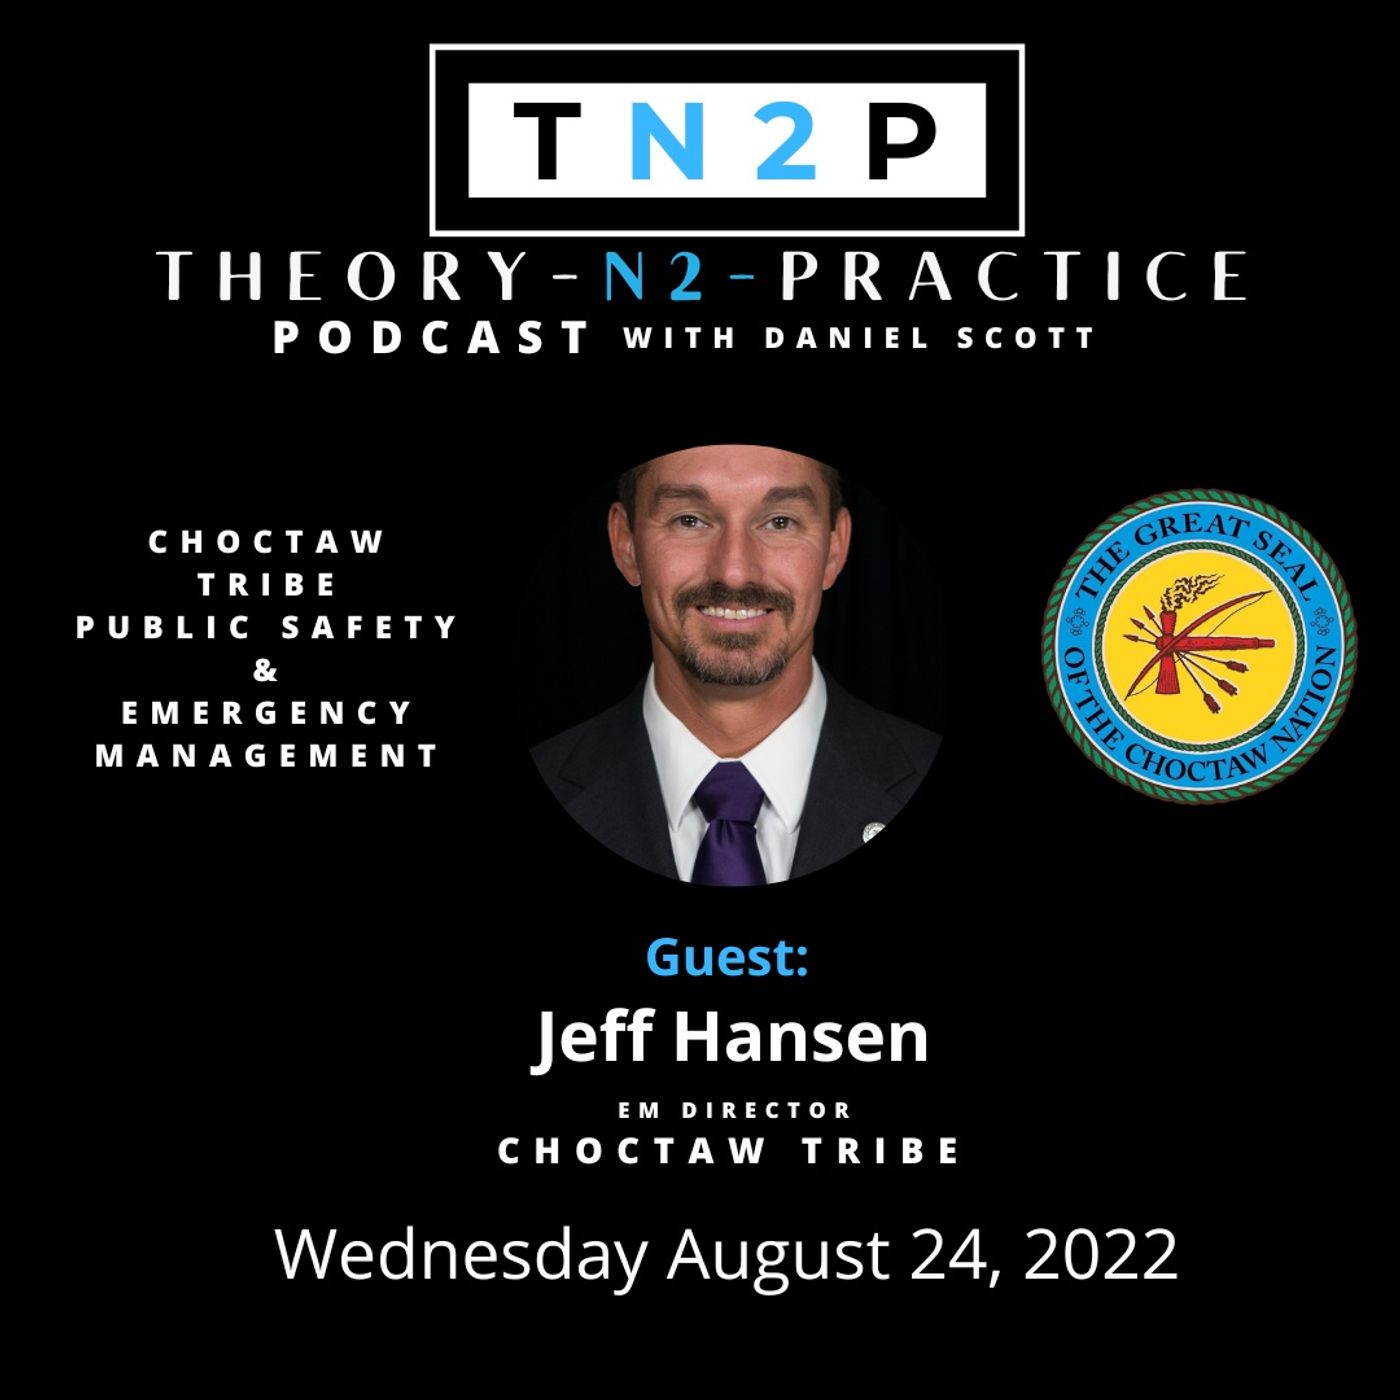 TN2P Jeff Hansen Interview